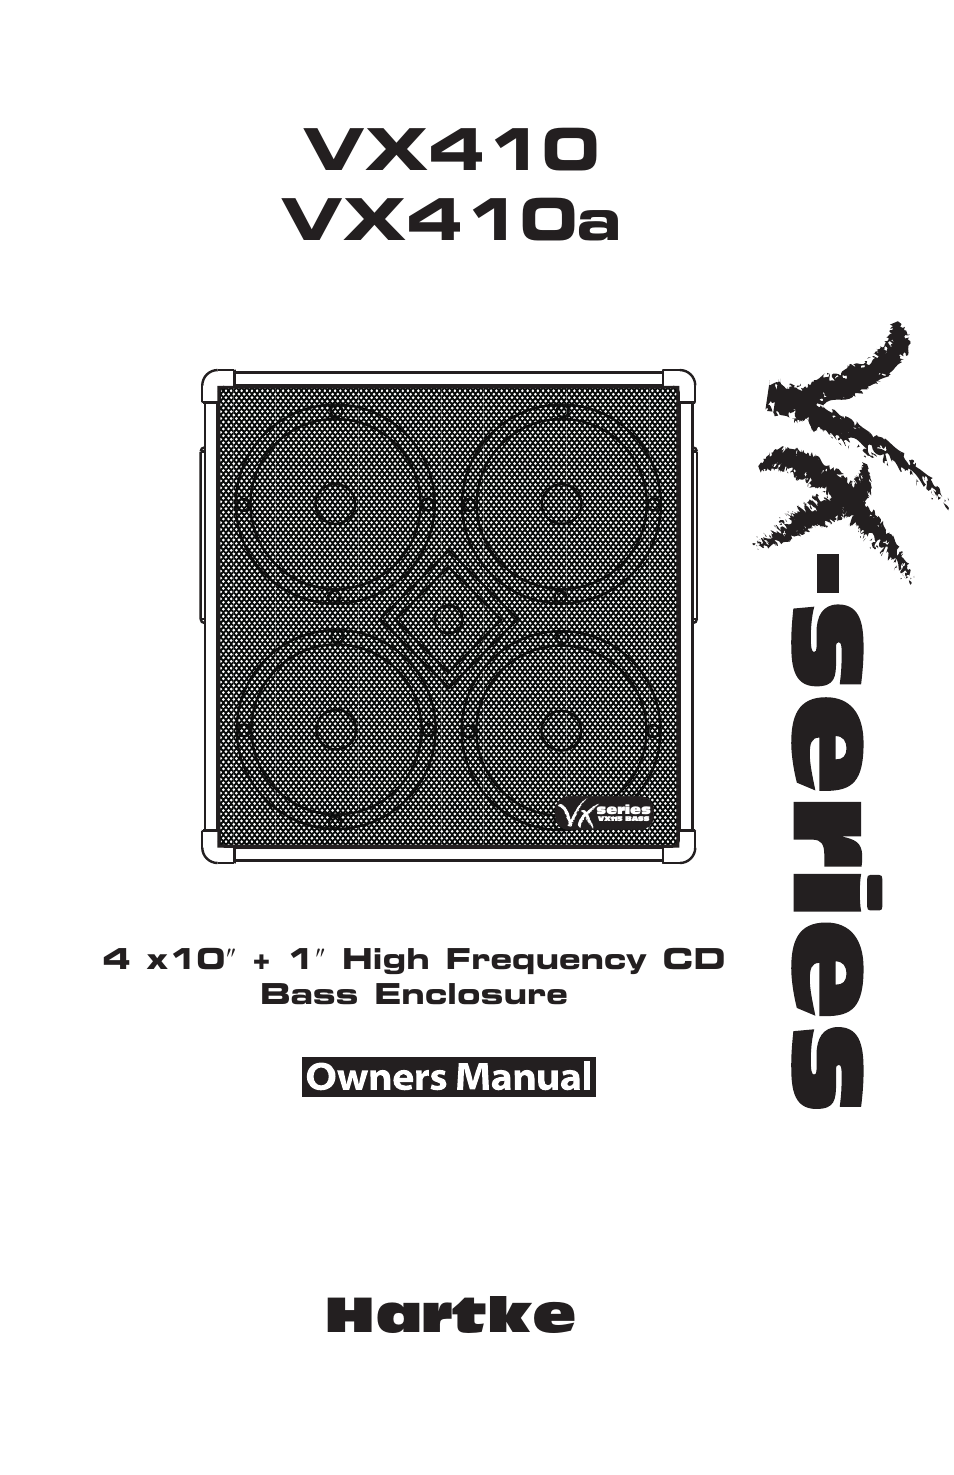 Bass Enclosure VX410a